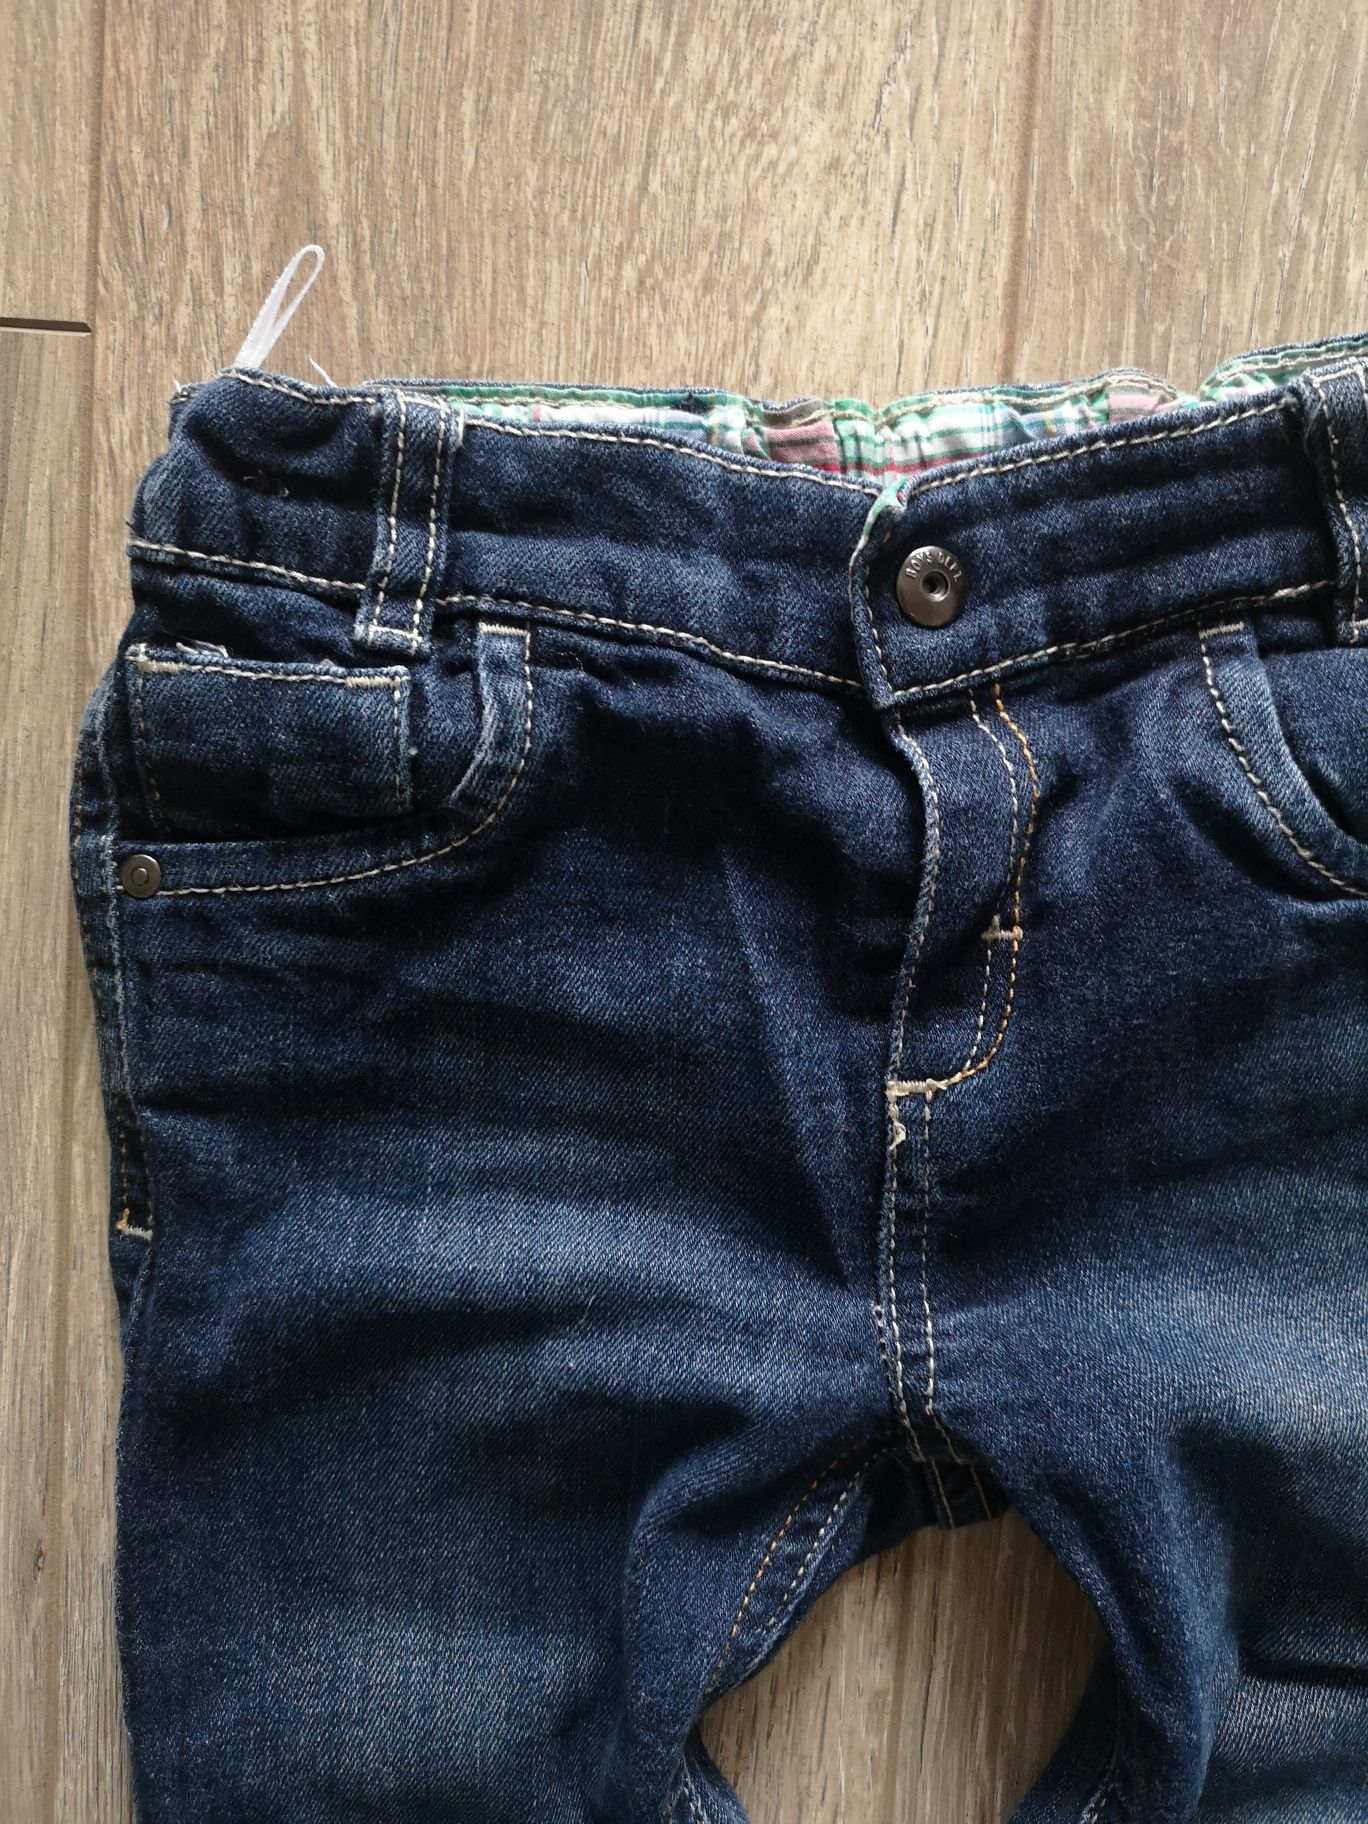 Zestaw Spodnie dresowe jeansowe B&q Kids 86-92